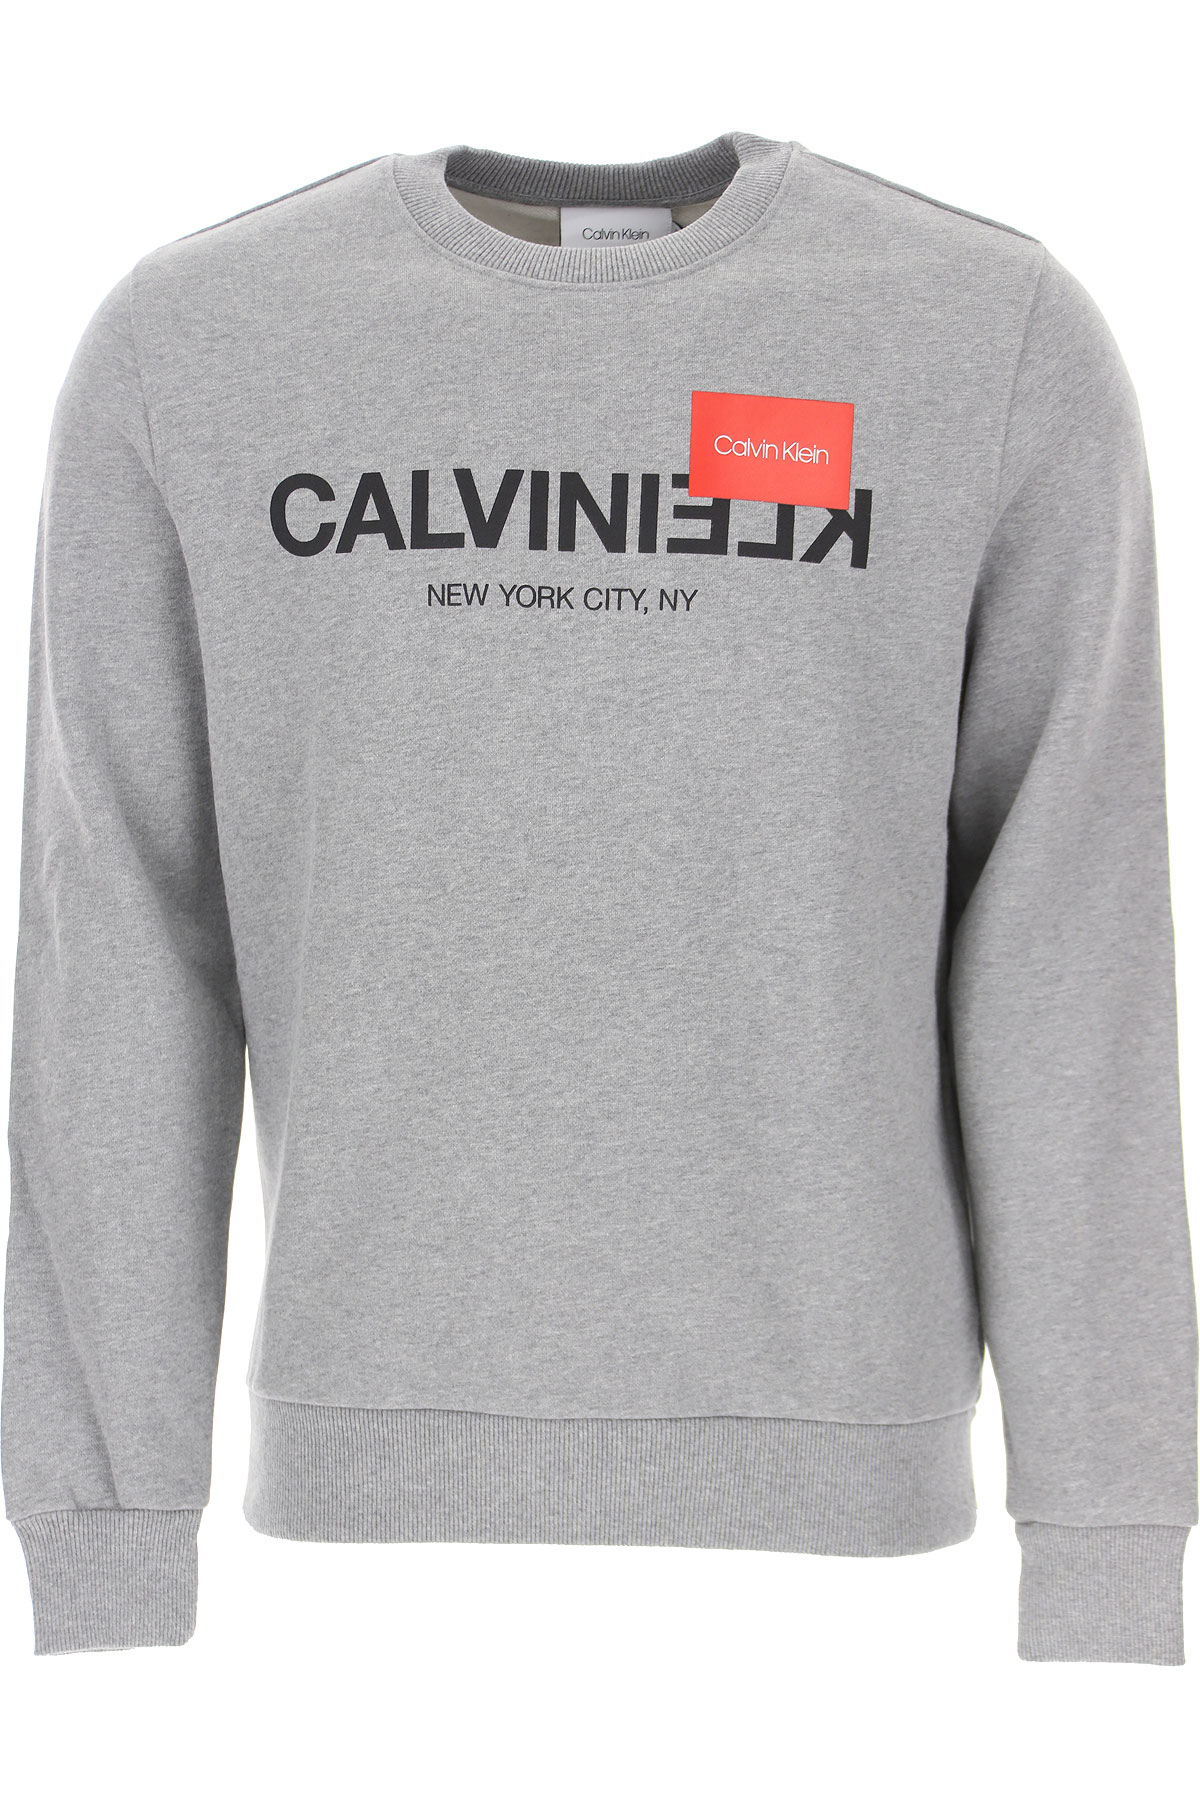 Mens Clothing Calvin Klein, Style code: k10k104517-p9v-